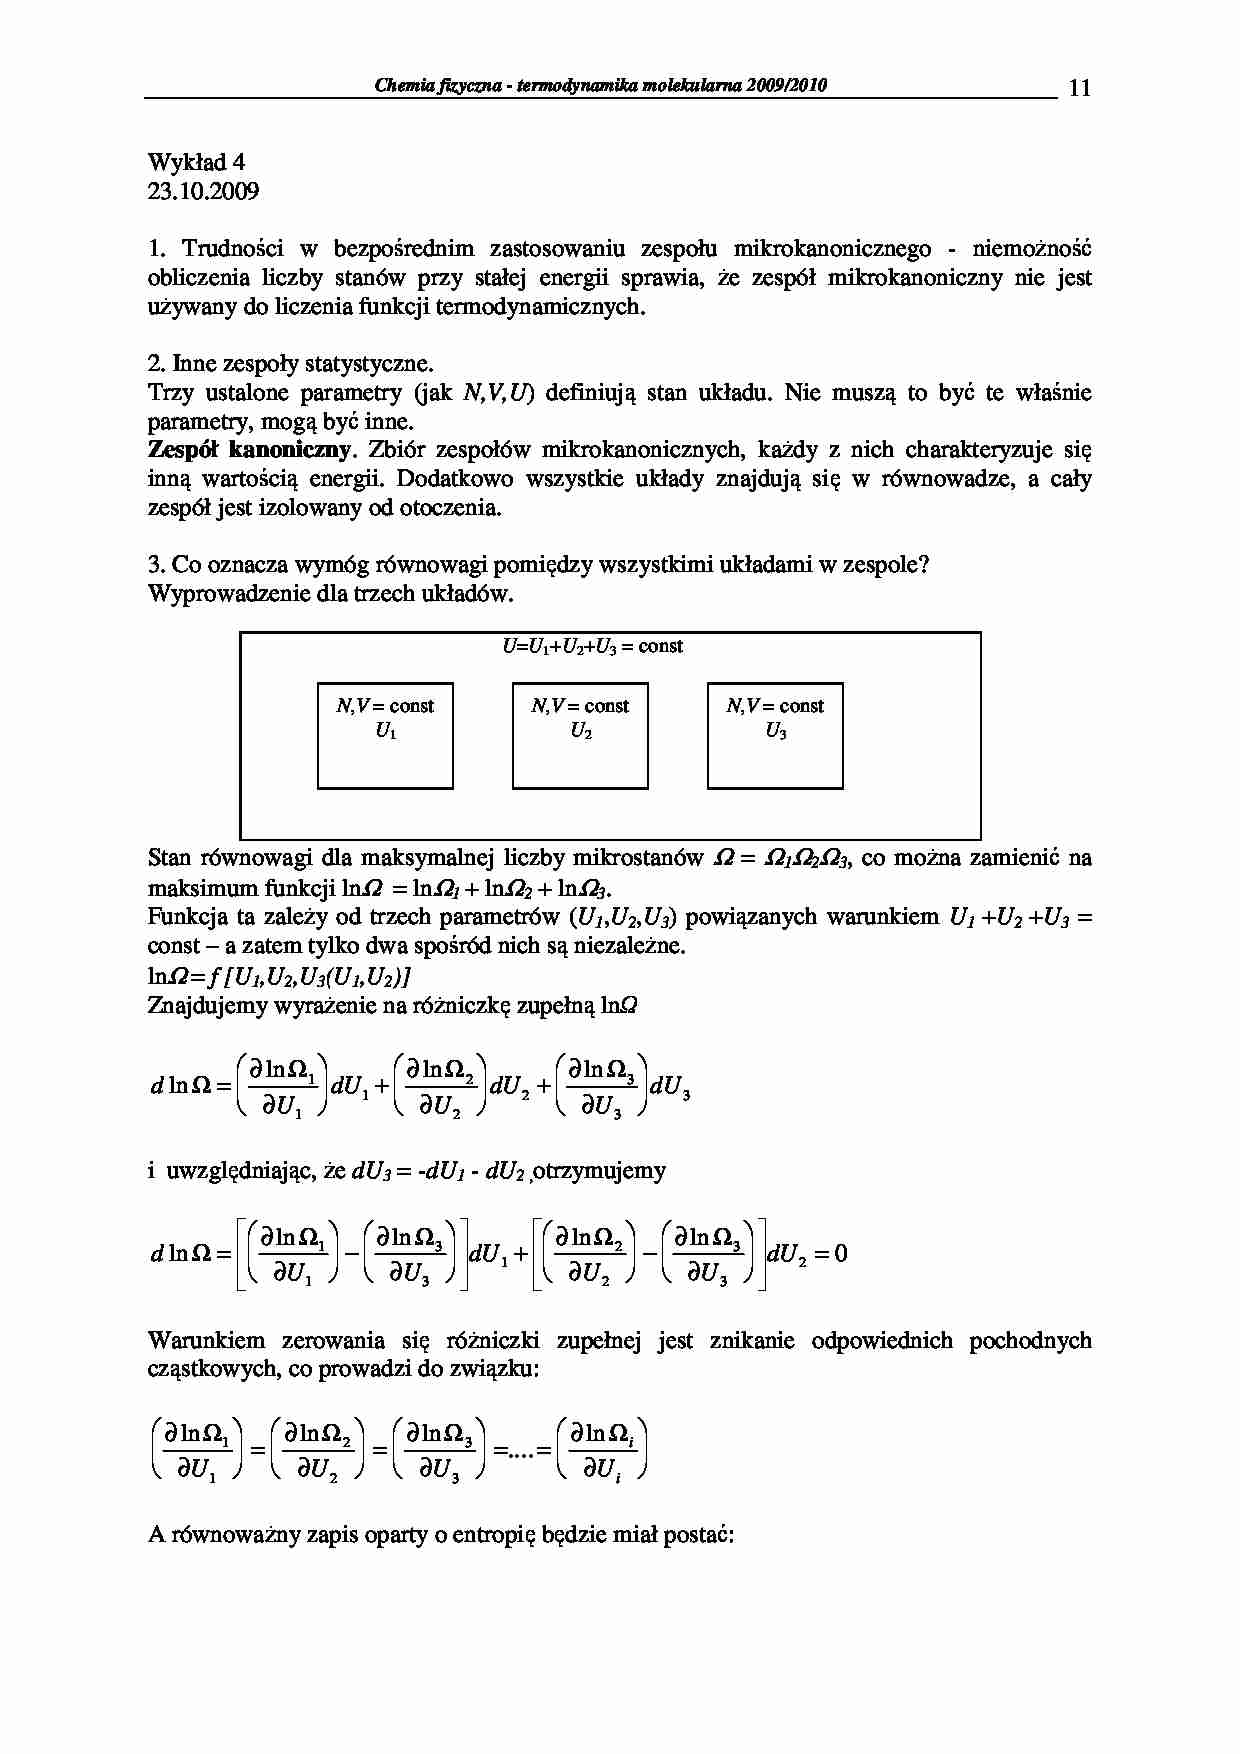 Chemia fizyczna - termodynamika molekularna 2009/2010-wykłady8 - strona 1